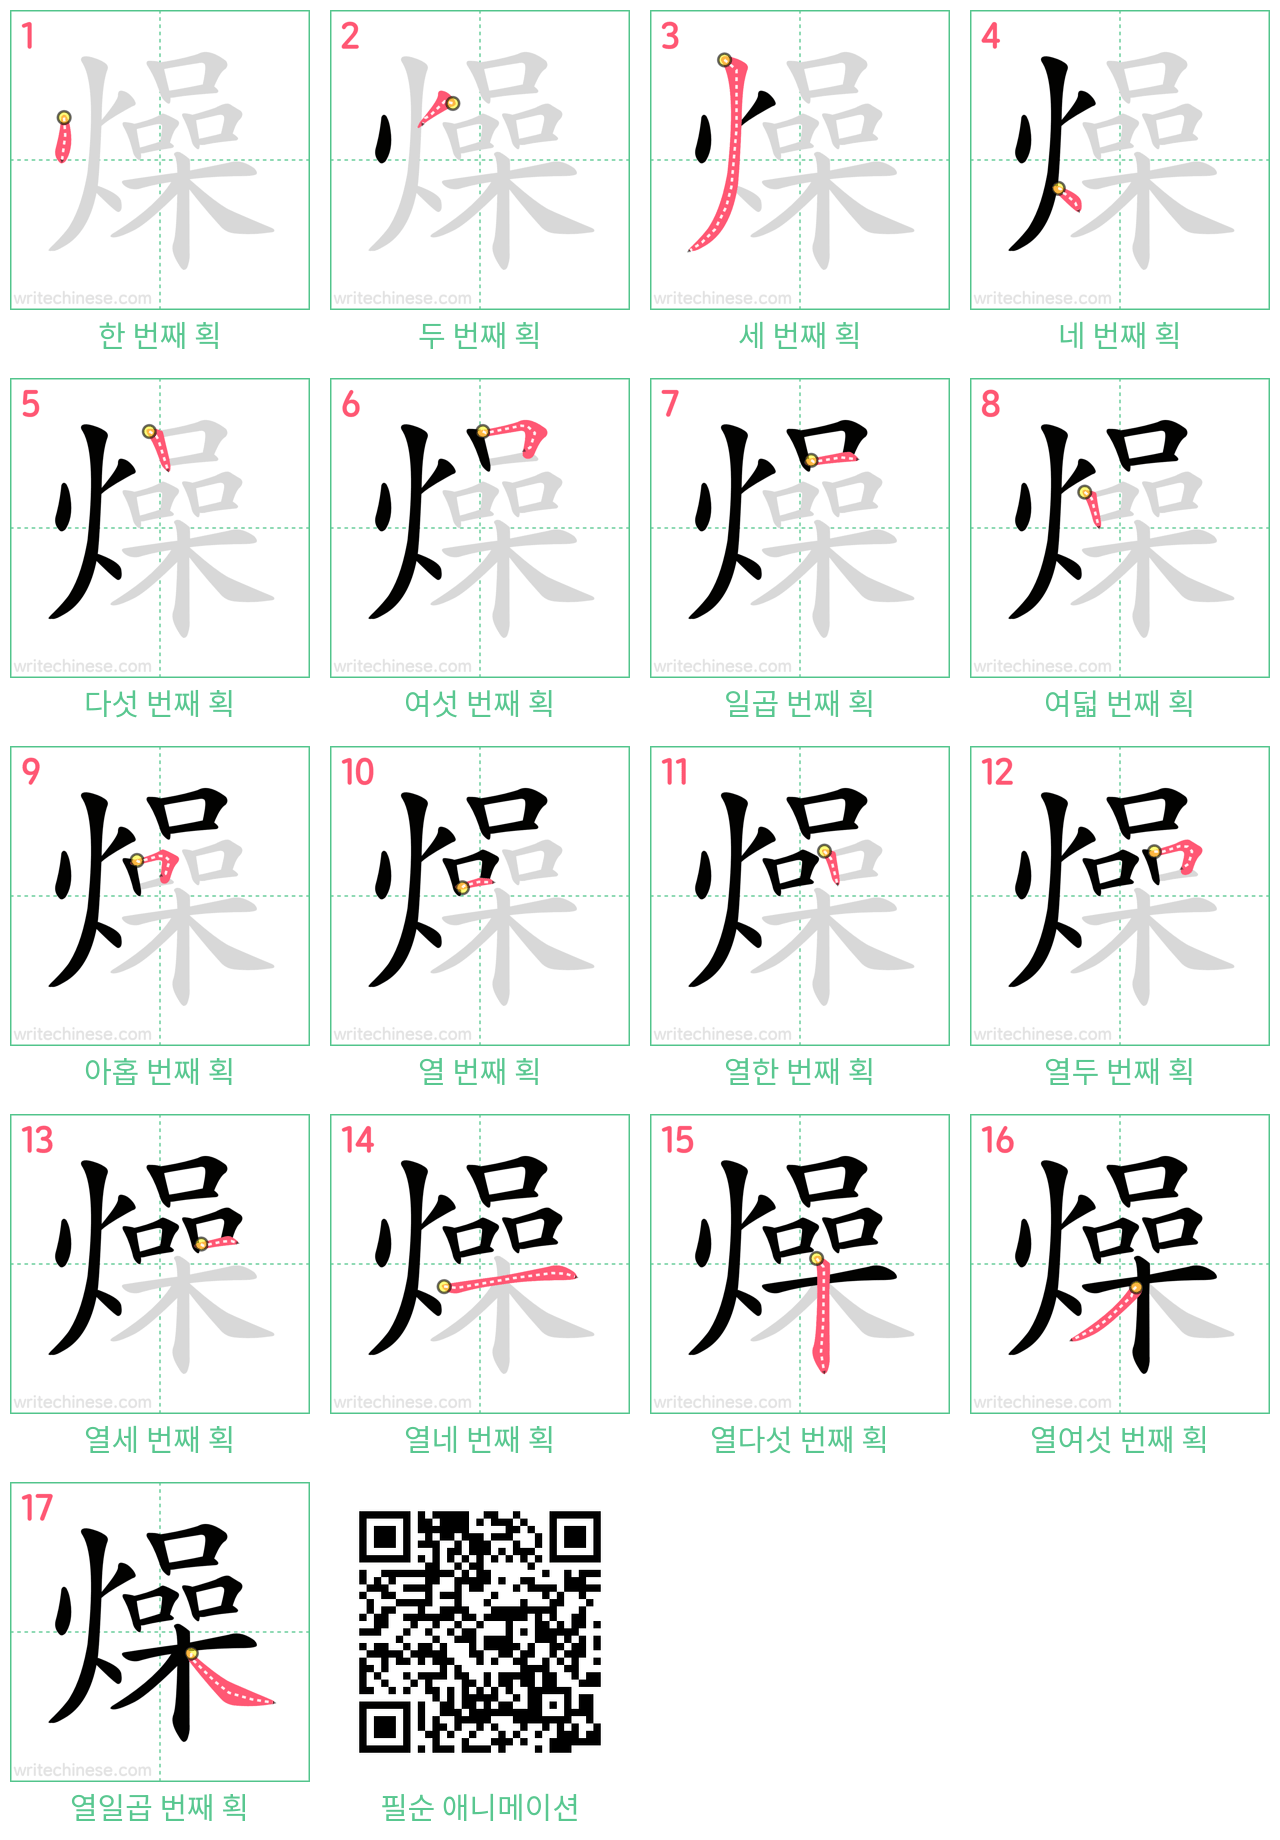 燥 step-by-step stroke order diagrams